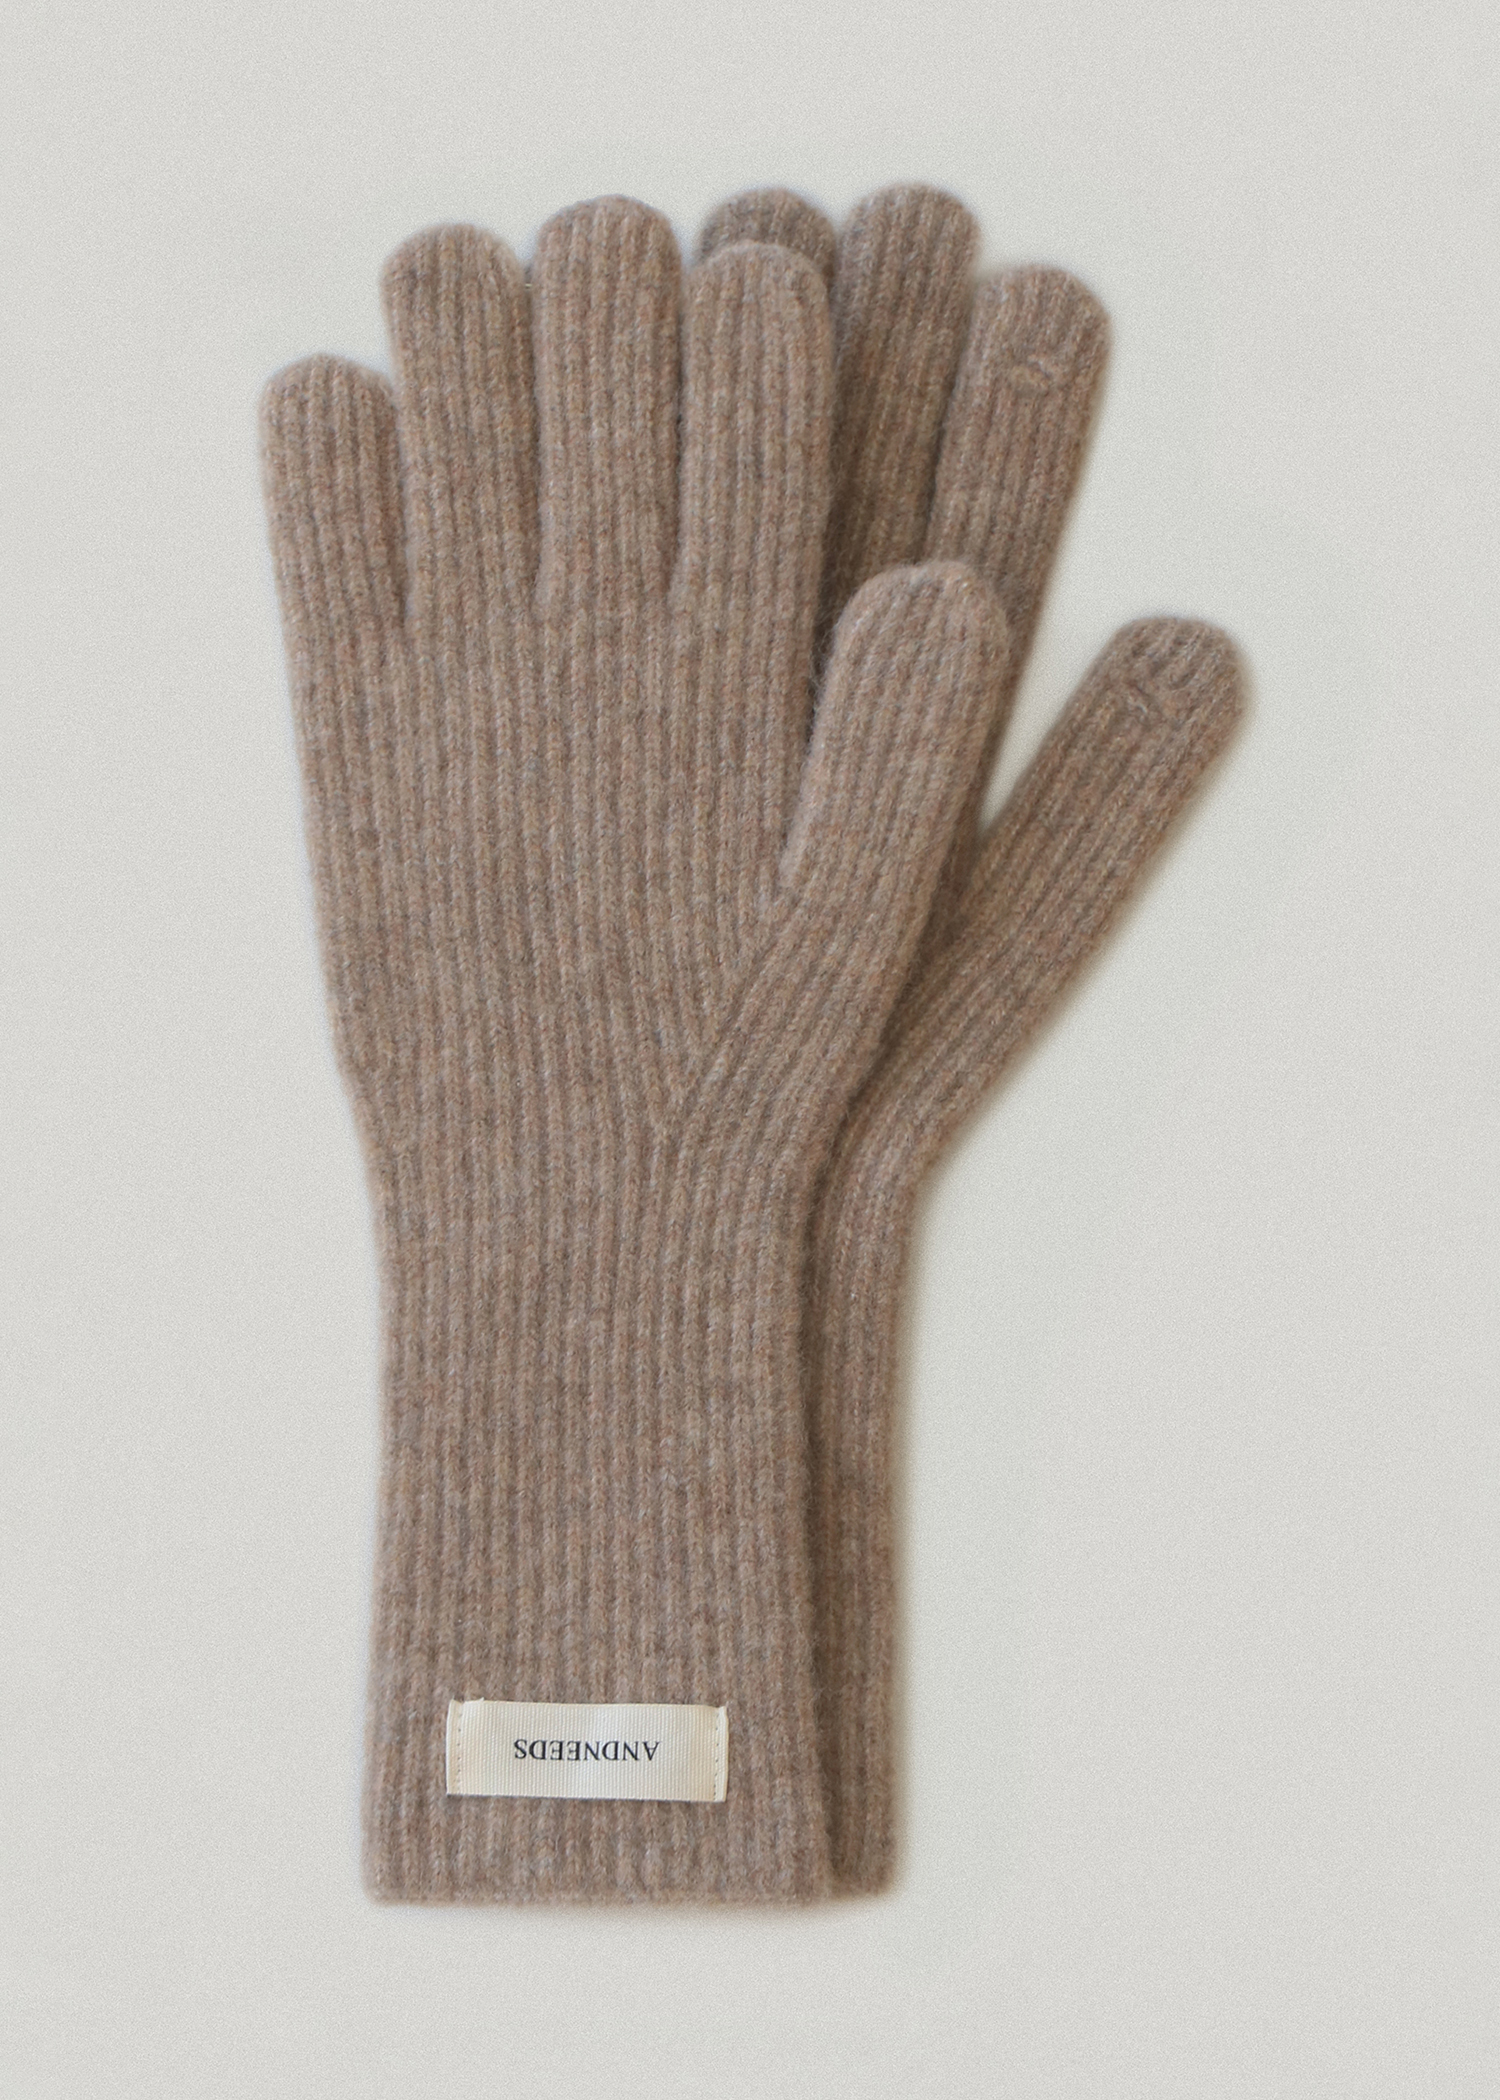 Wool ribbed gloves (brown)